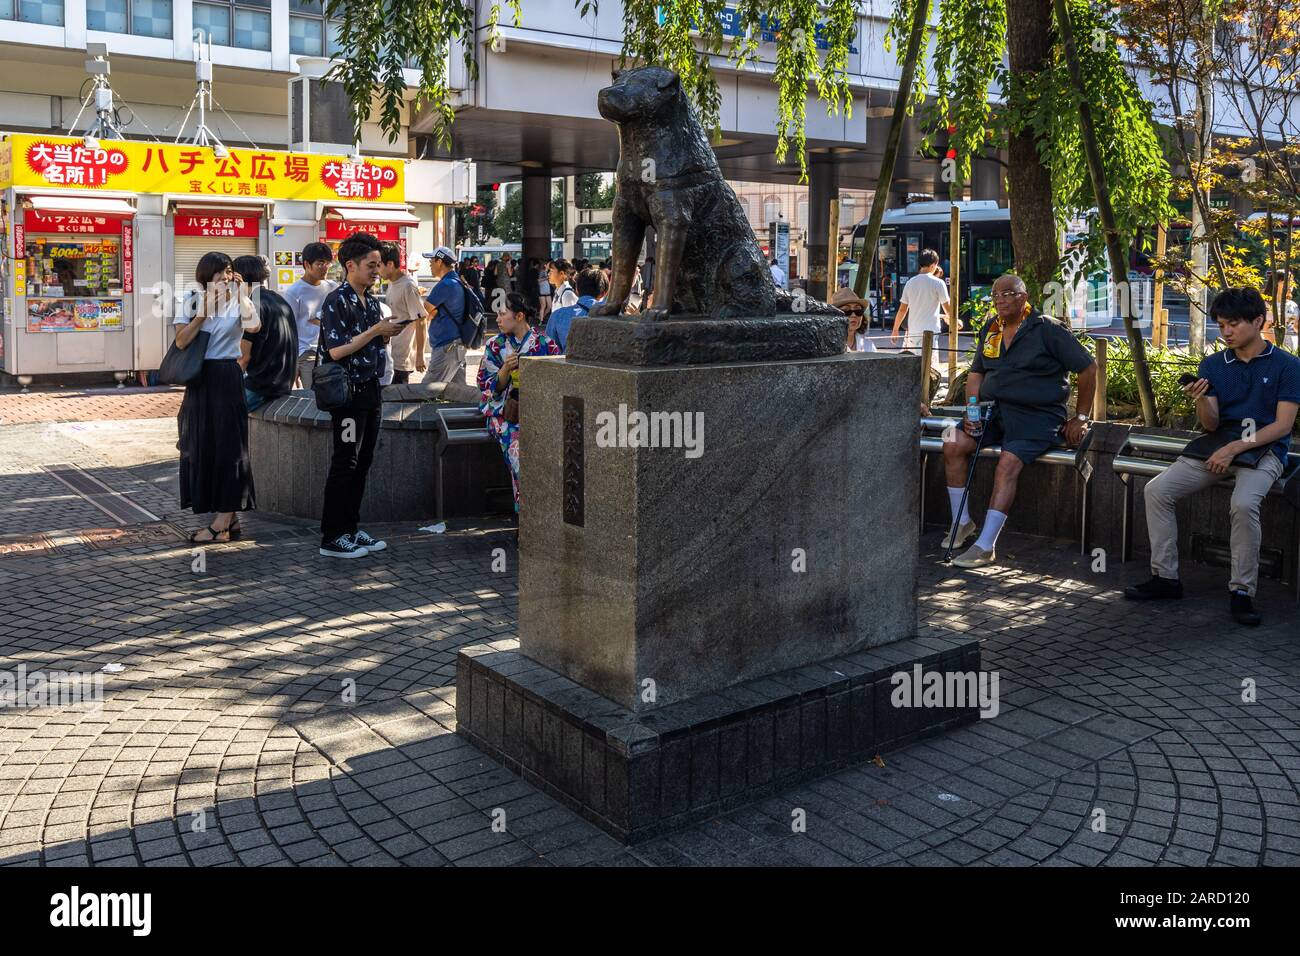 Hachiko-Statue in der Nähe der Station Shibuya. Hachiko ist ein sehr beliebtes Symbol für Hundetreue. Tokio, Japan, August 2019 Stockfoto